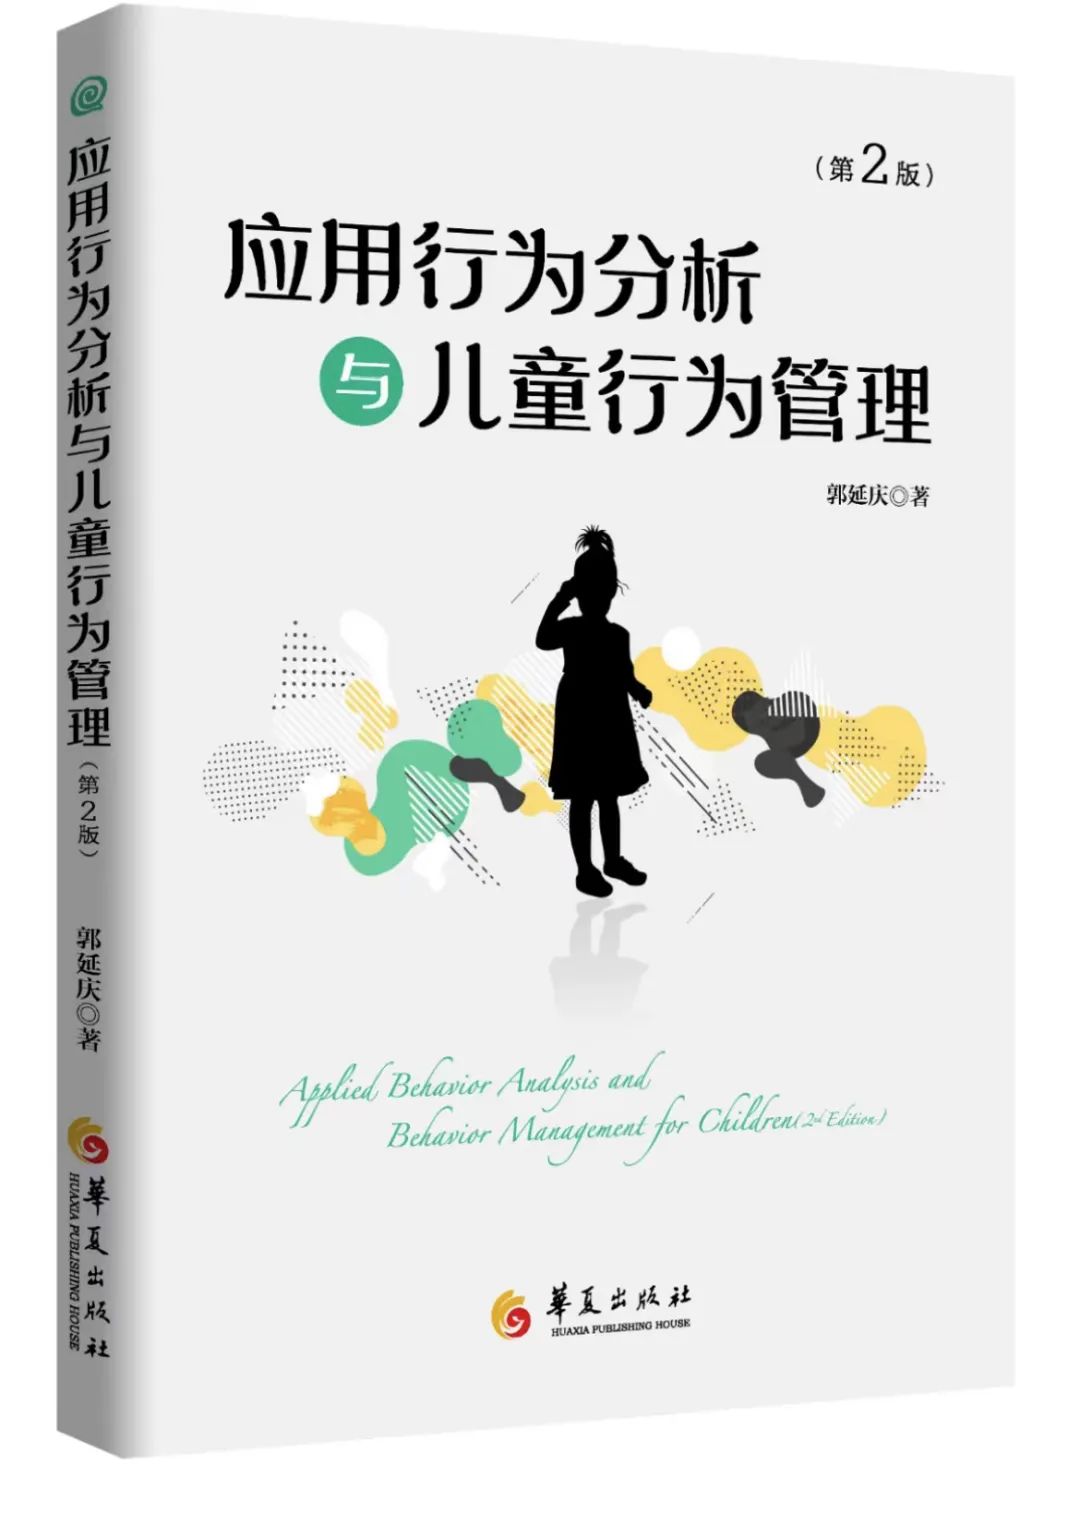 郭延庆《应用行为分析与儿童行为管理》——杨晓玲序